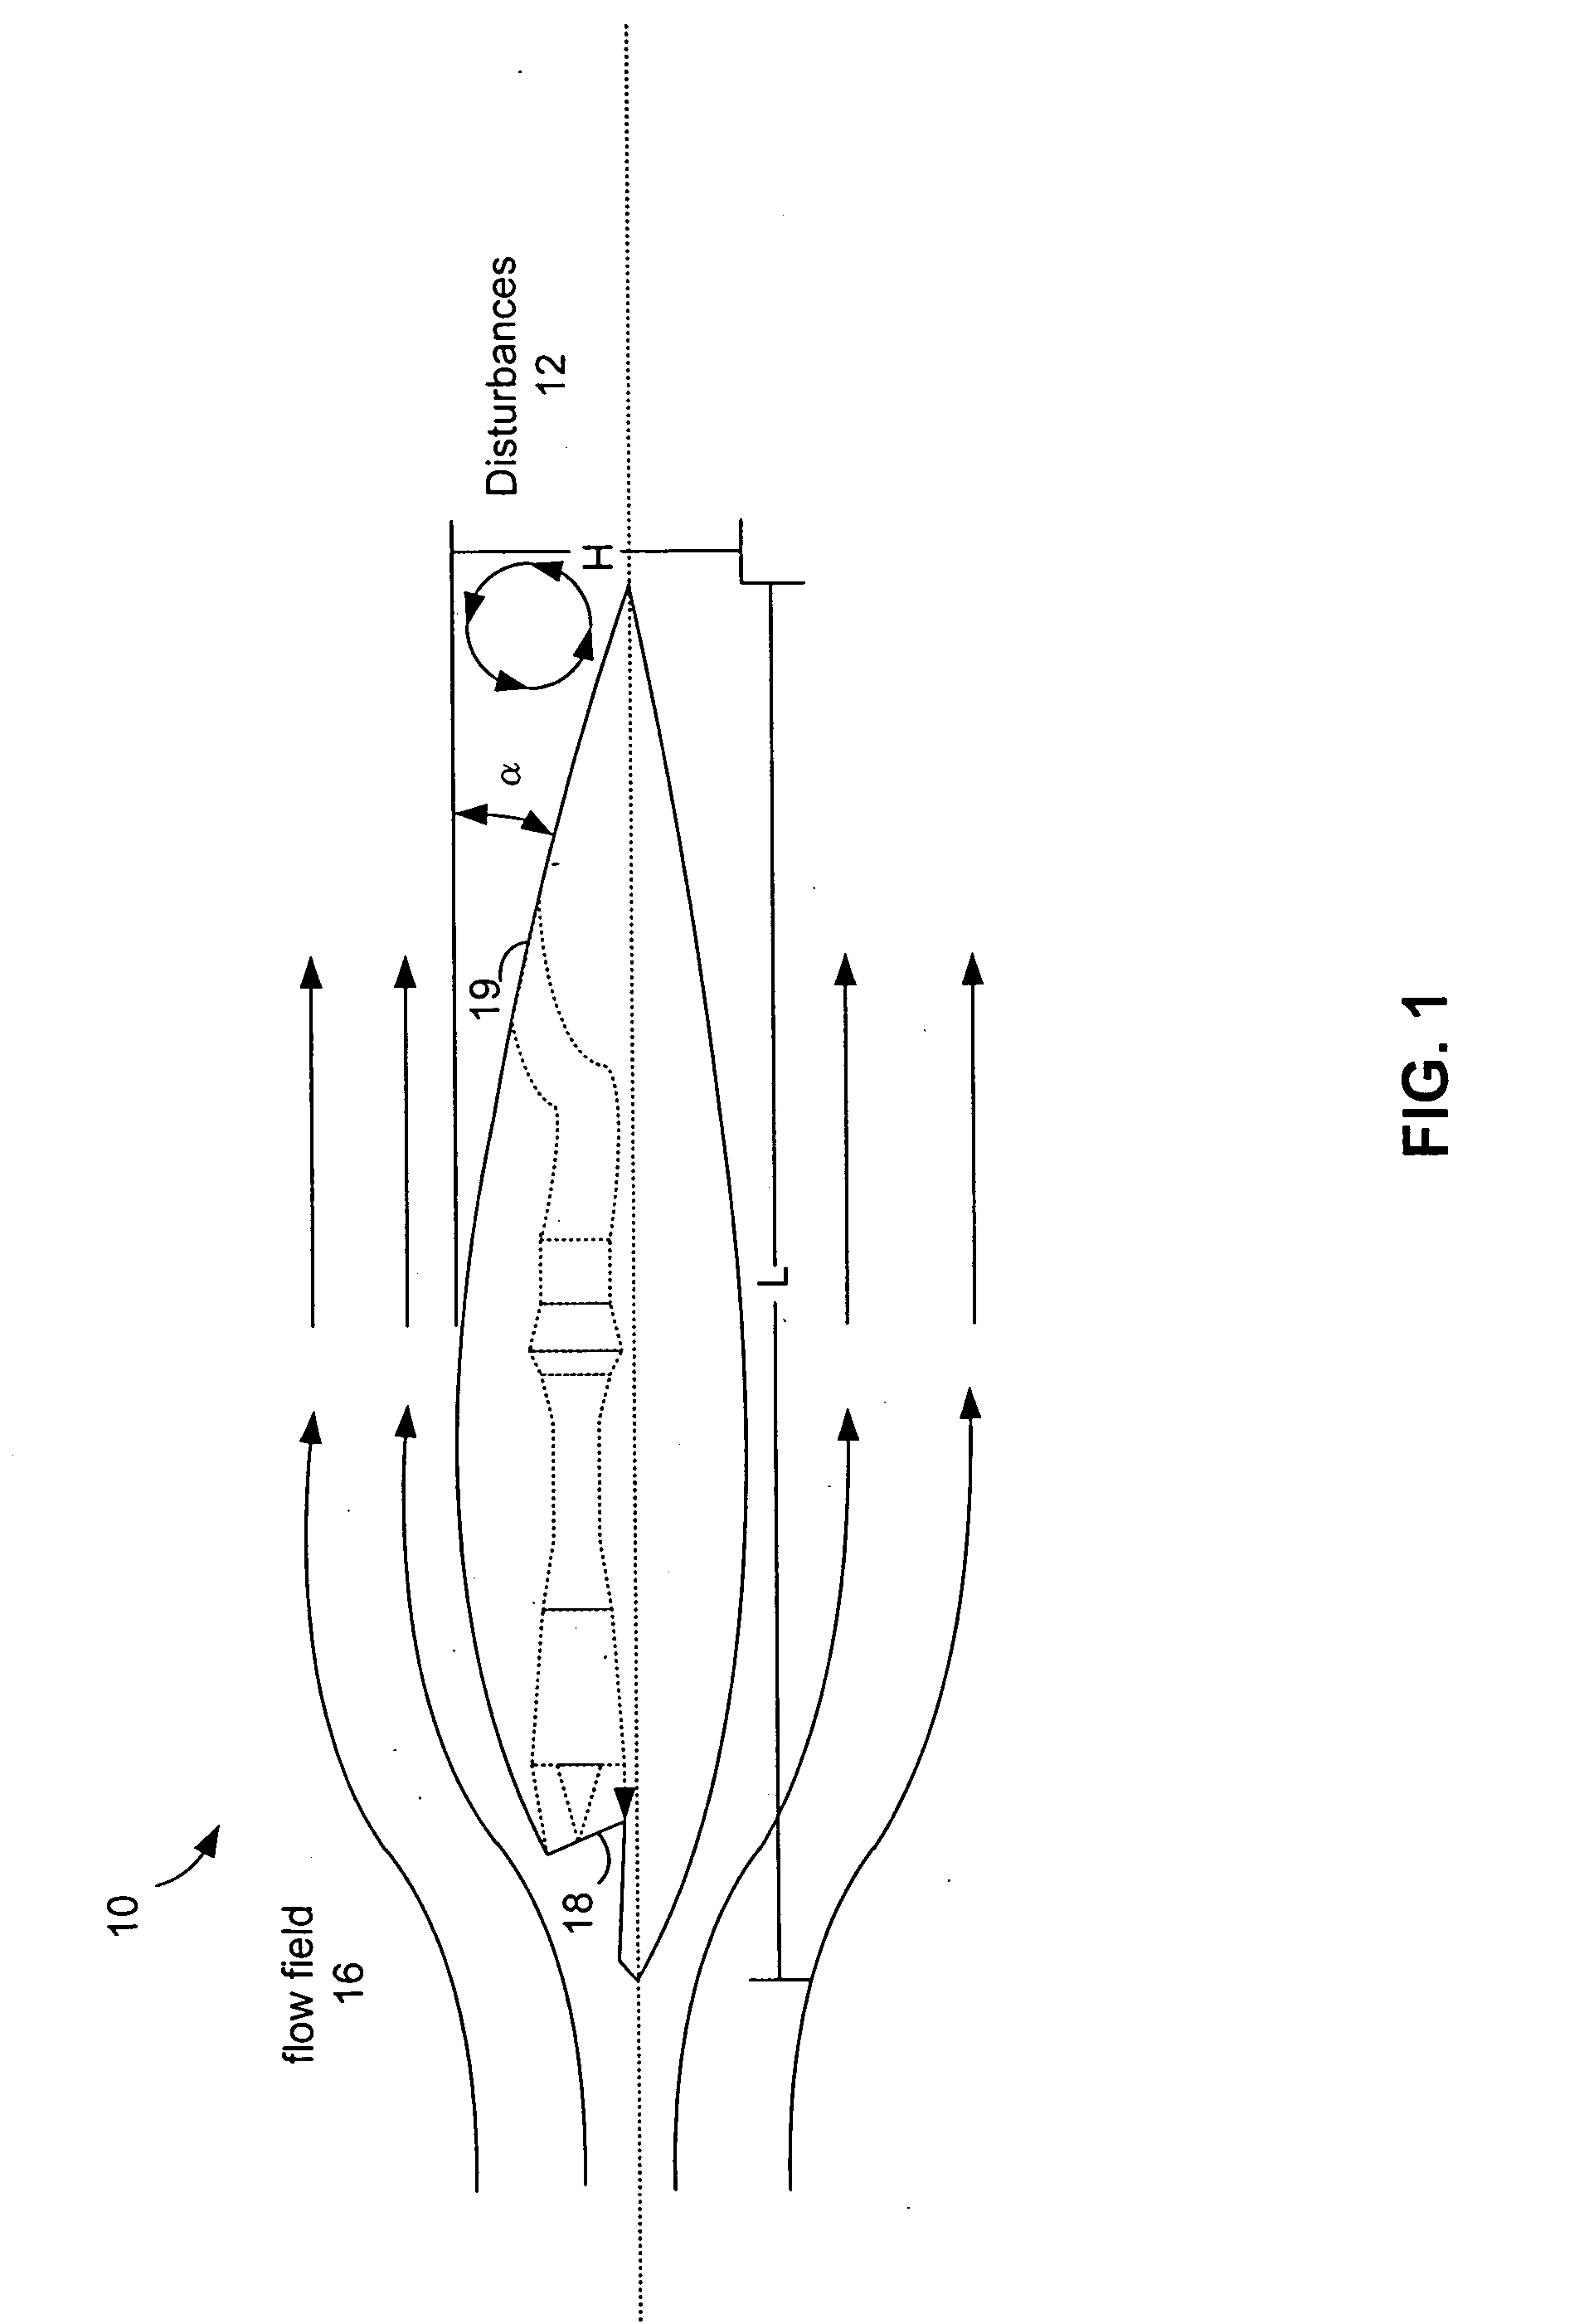 Conformal aero-adaptive nozzle/aftbody